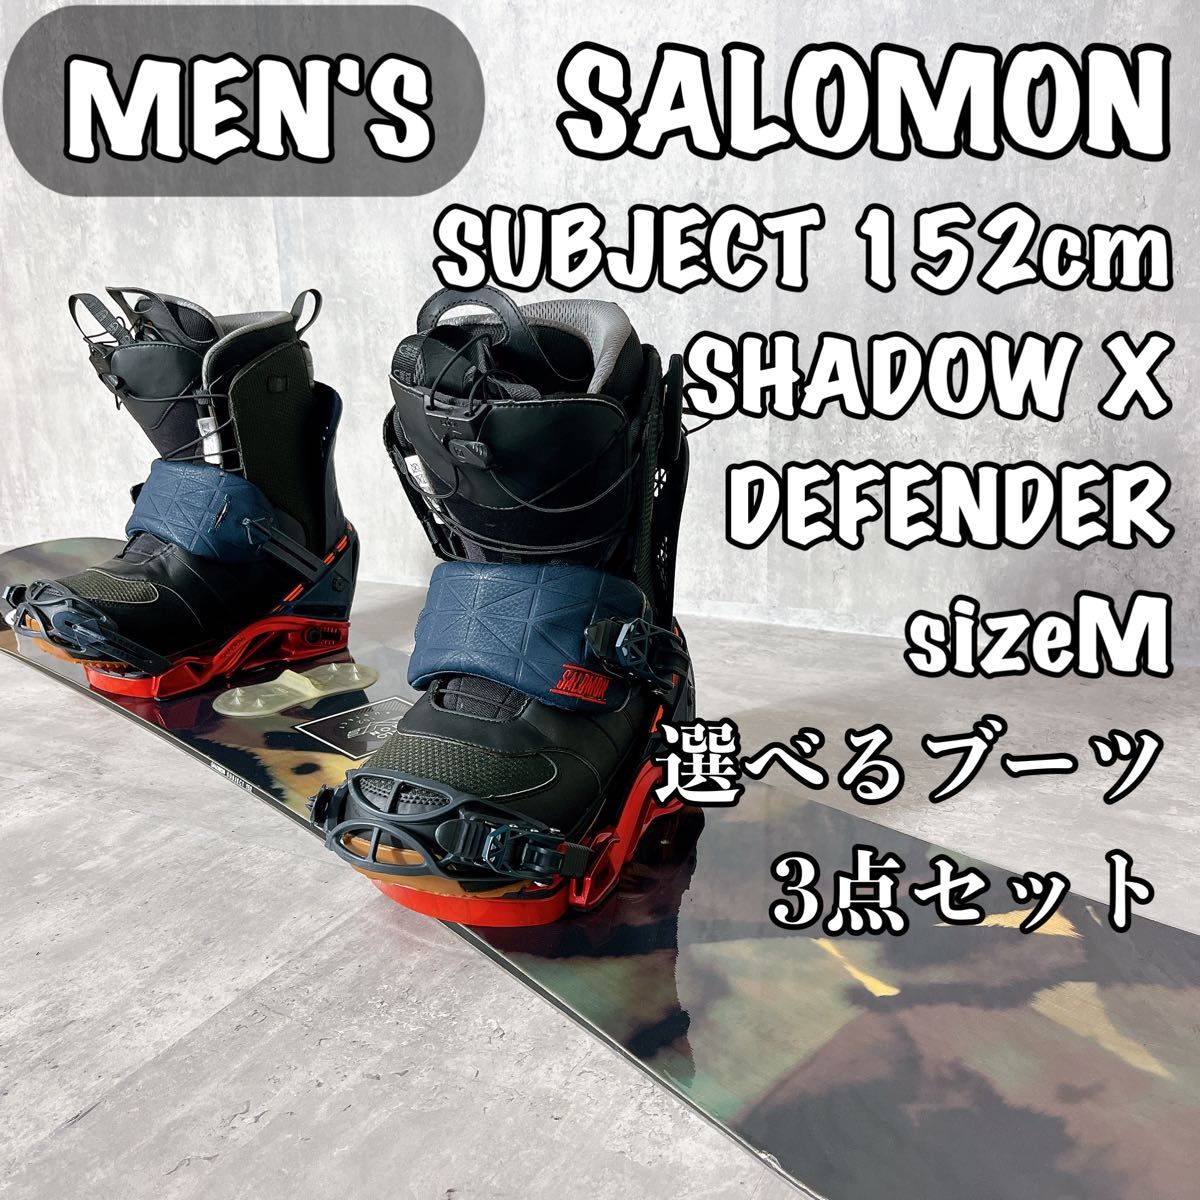 サロモン SUBJECT 152cm メンズ スノーボード 3点 セット｜Yahoo